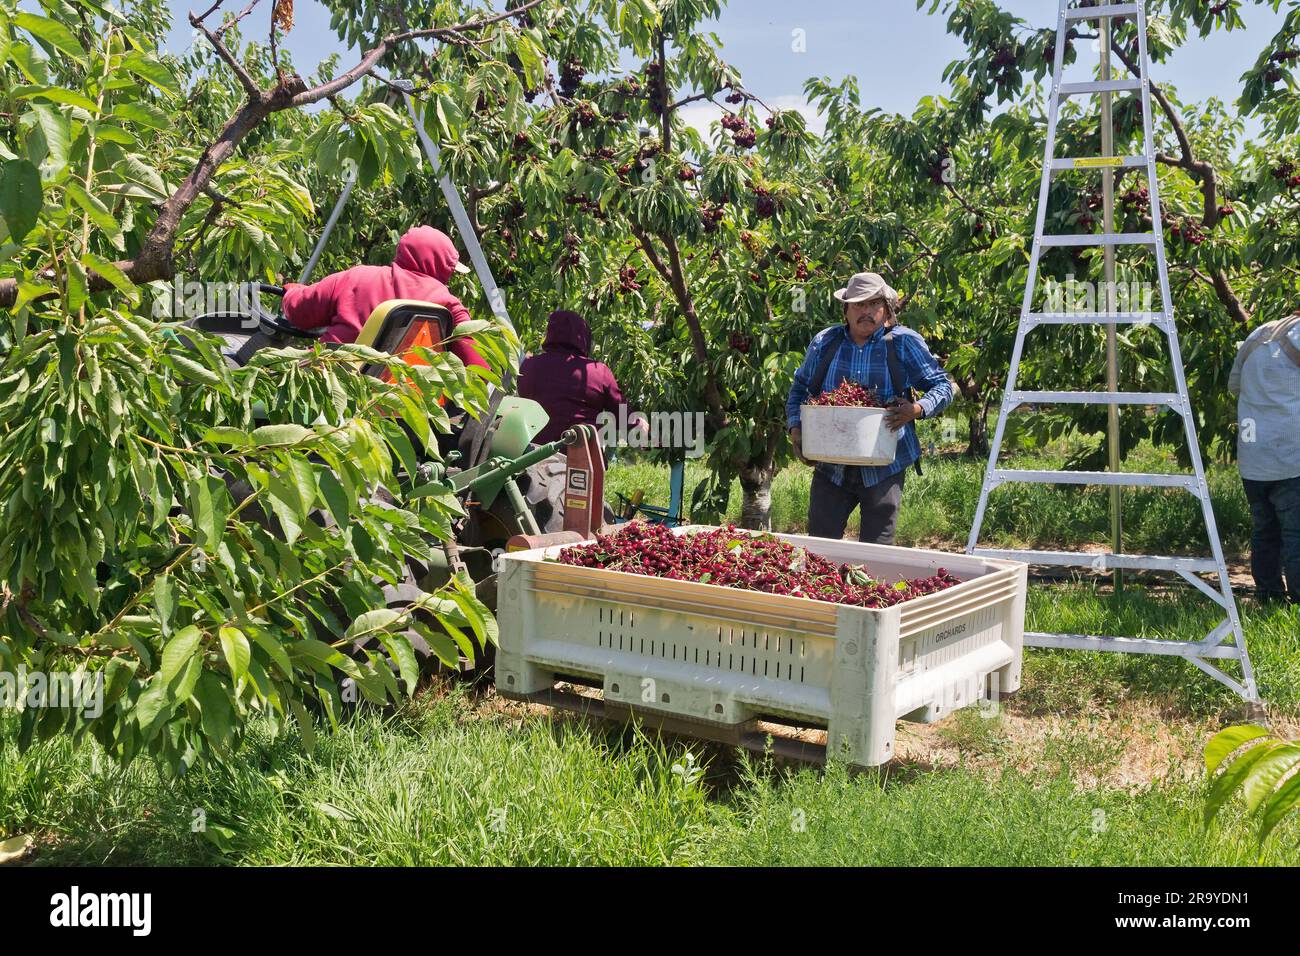 Ouvriers récoltant des cerises Royal Brooks 'Prunus avium', travailleur déposant les cerises récoltées dans la trémie, tracteur à fourche ramassant la récolte. Banque D'Images